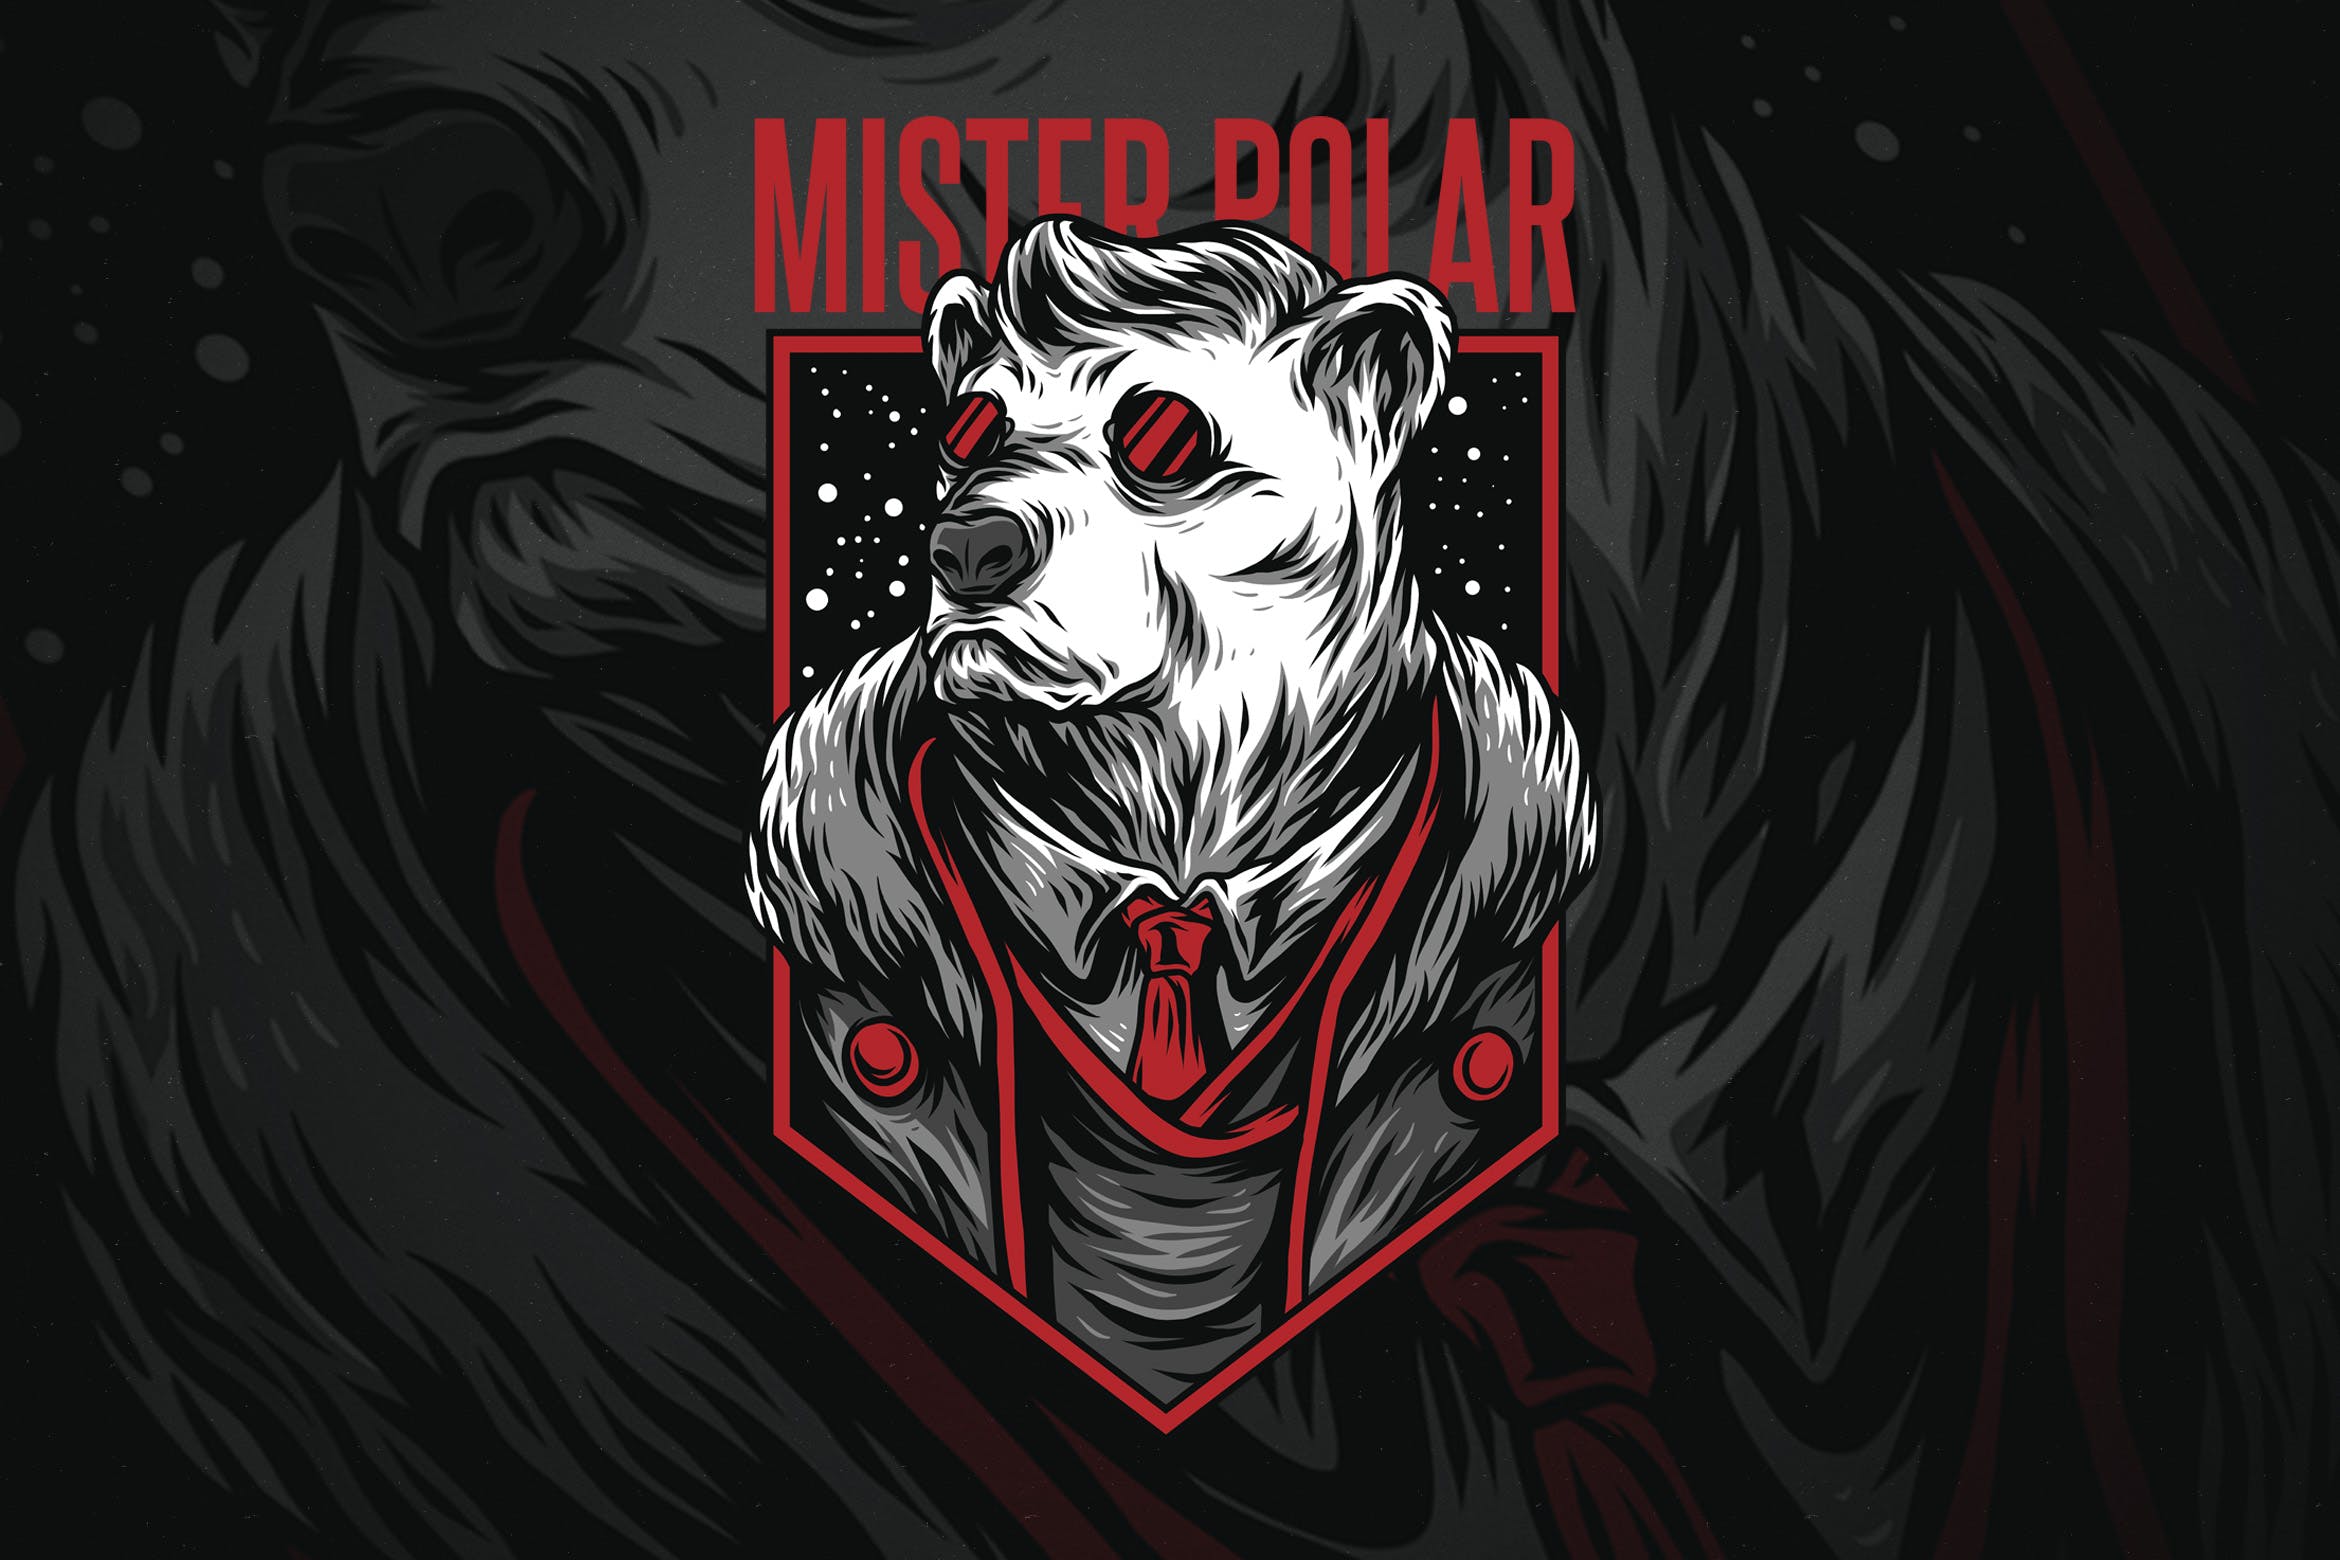 极地先生潮牌T恤印花图案16图库精选设计素材 Mister Polar插图